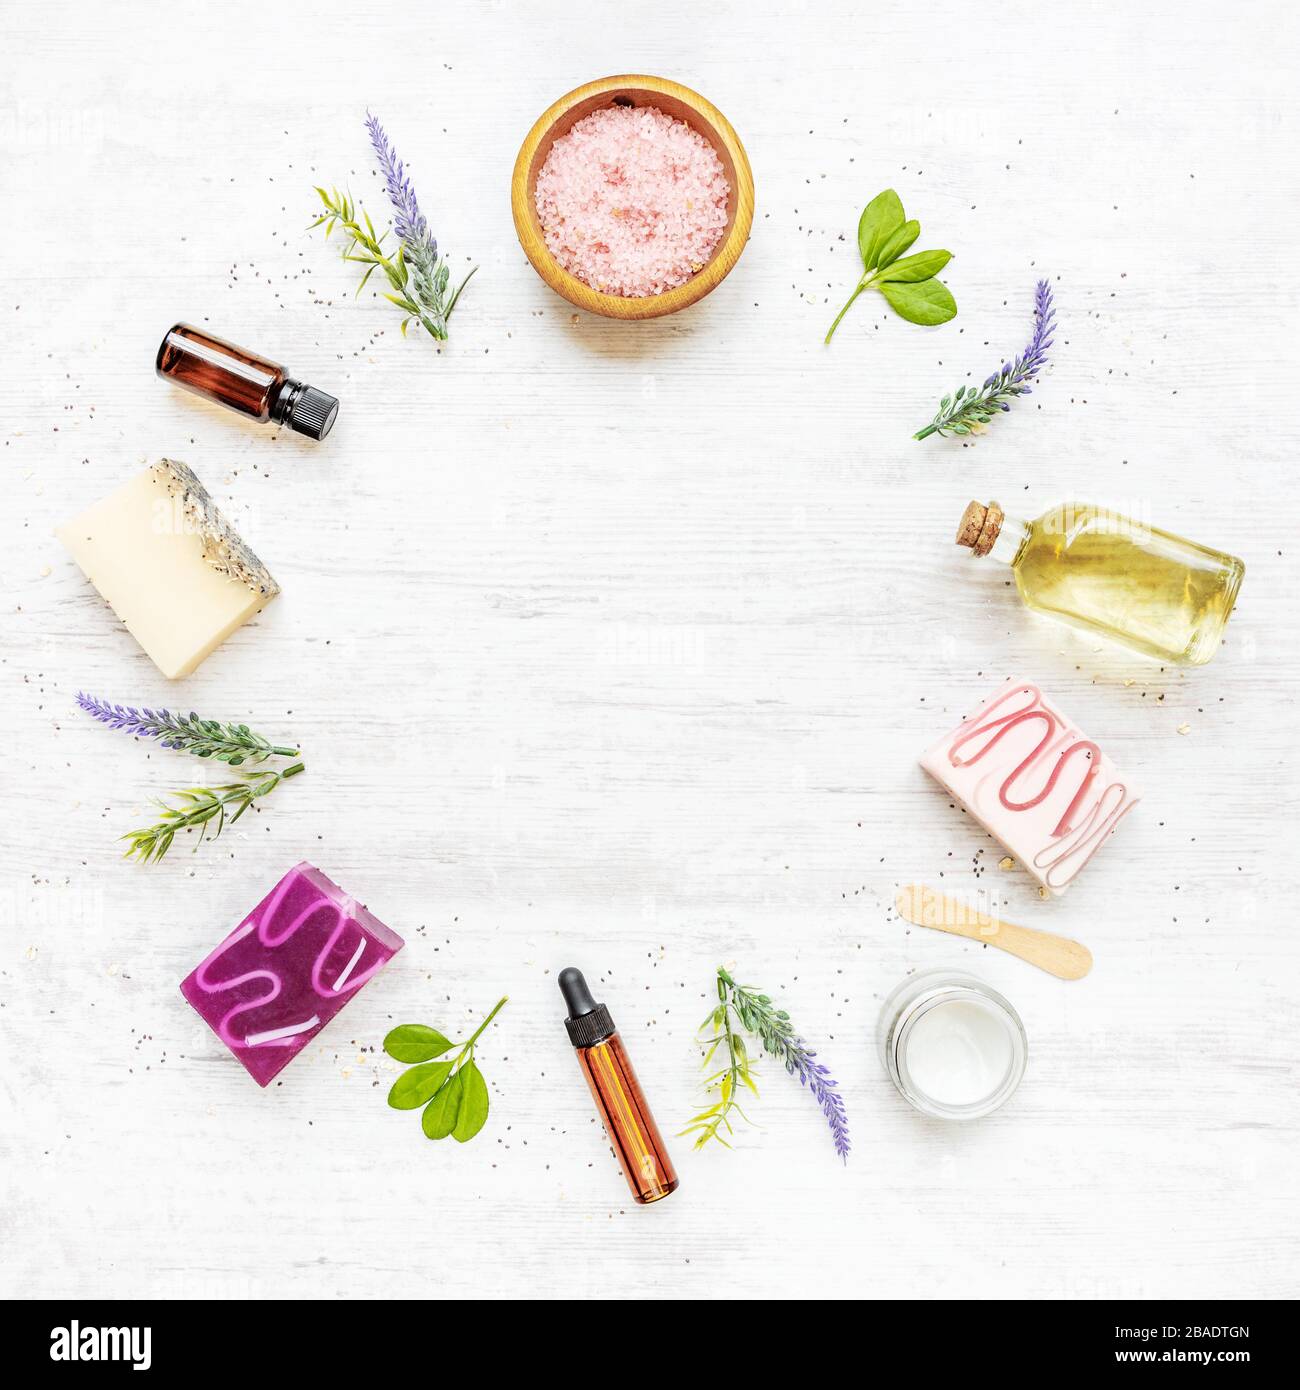 Draufsicht auf organische Seifen und Kosmetik, die im Kreis mit Lavendel, Kräutern, chia und ätherischen Ölen angeordnet sind. Weißer rusrischer Hintergrund, Kopierbereich. Stockfoto